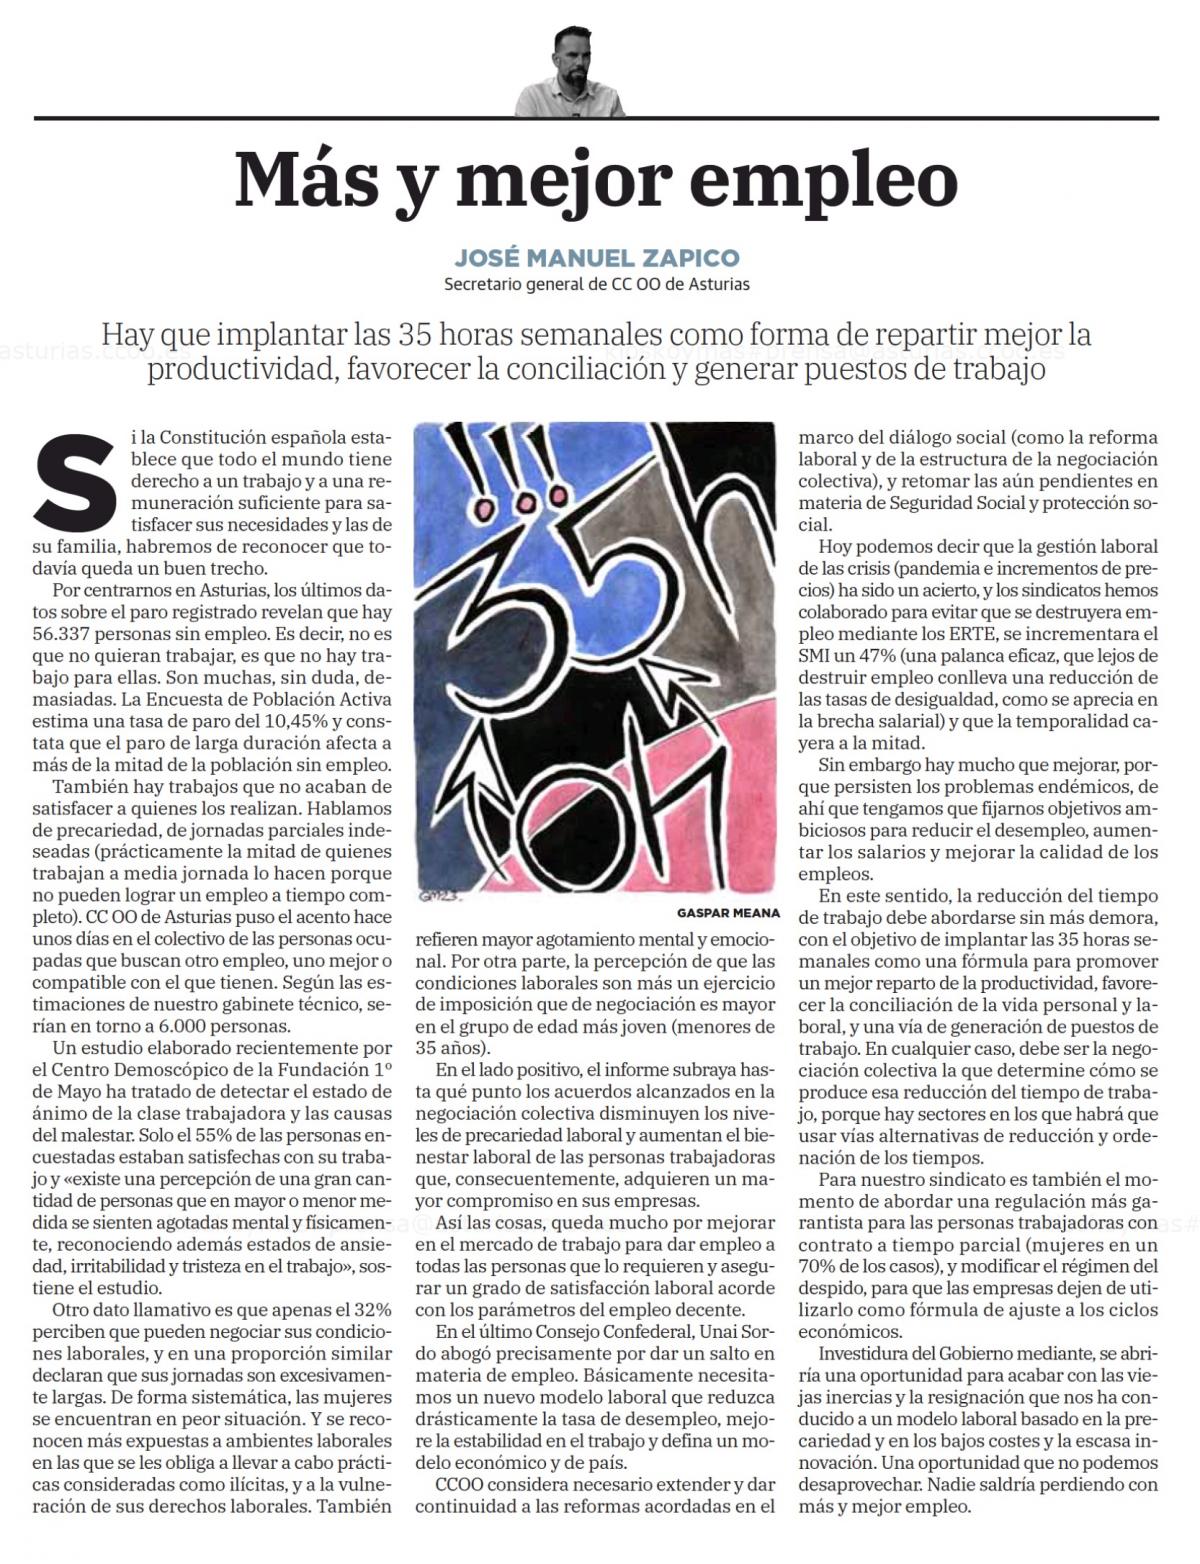 Tribuna de J. M. Zapico en "El Comercio"